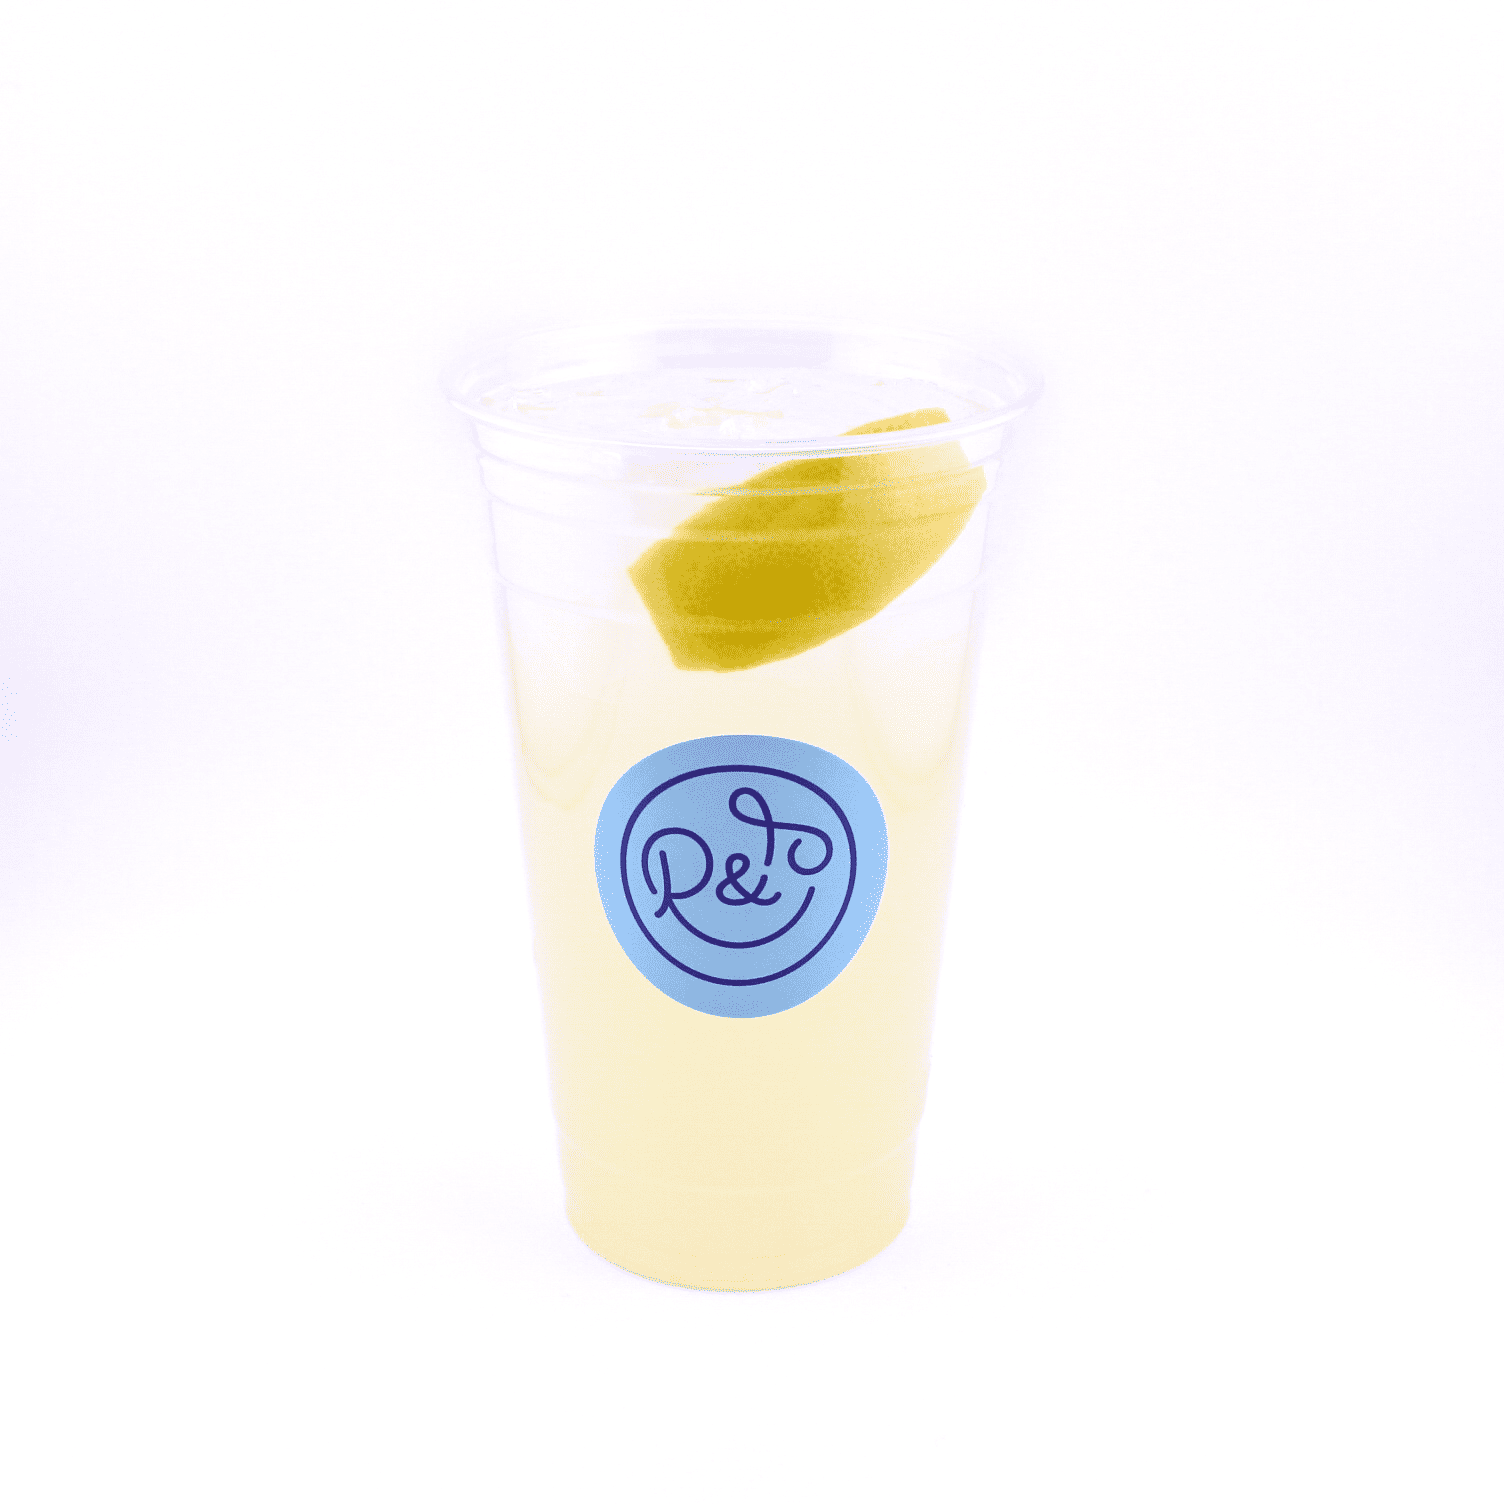 Freshly squeezed Lemonade